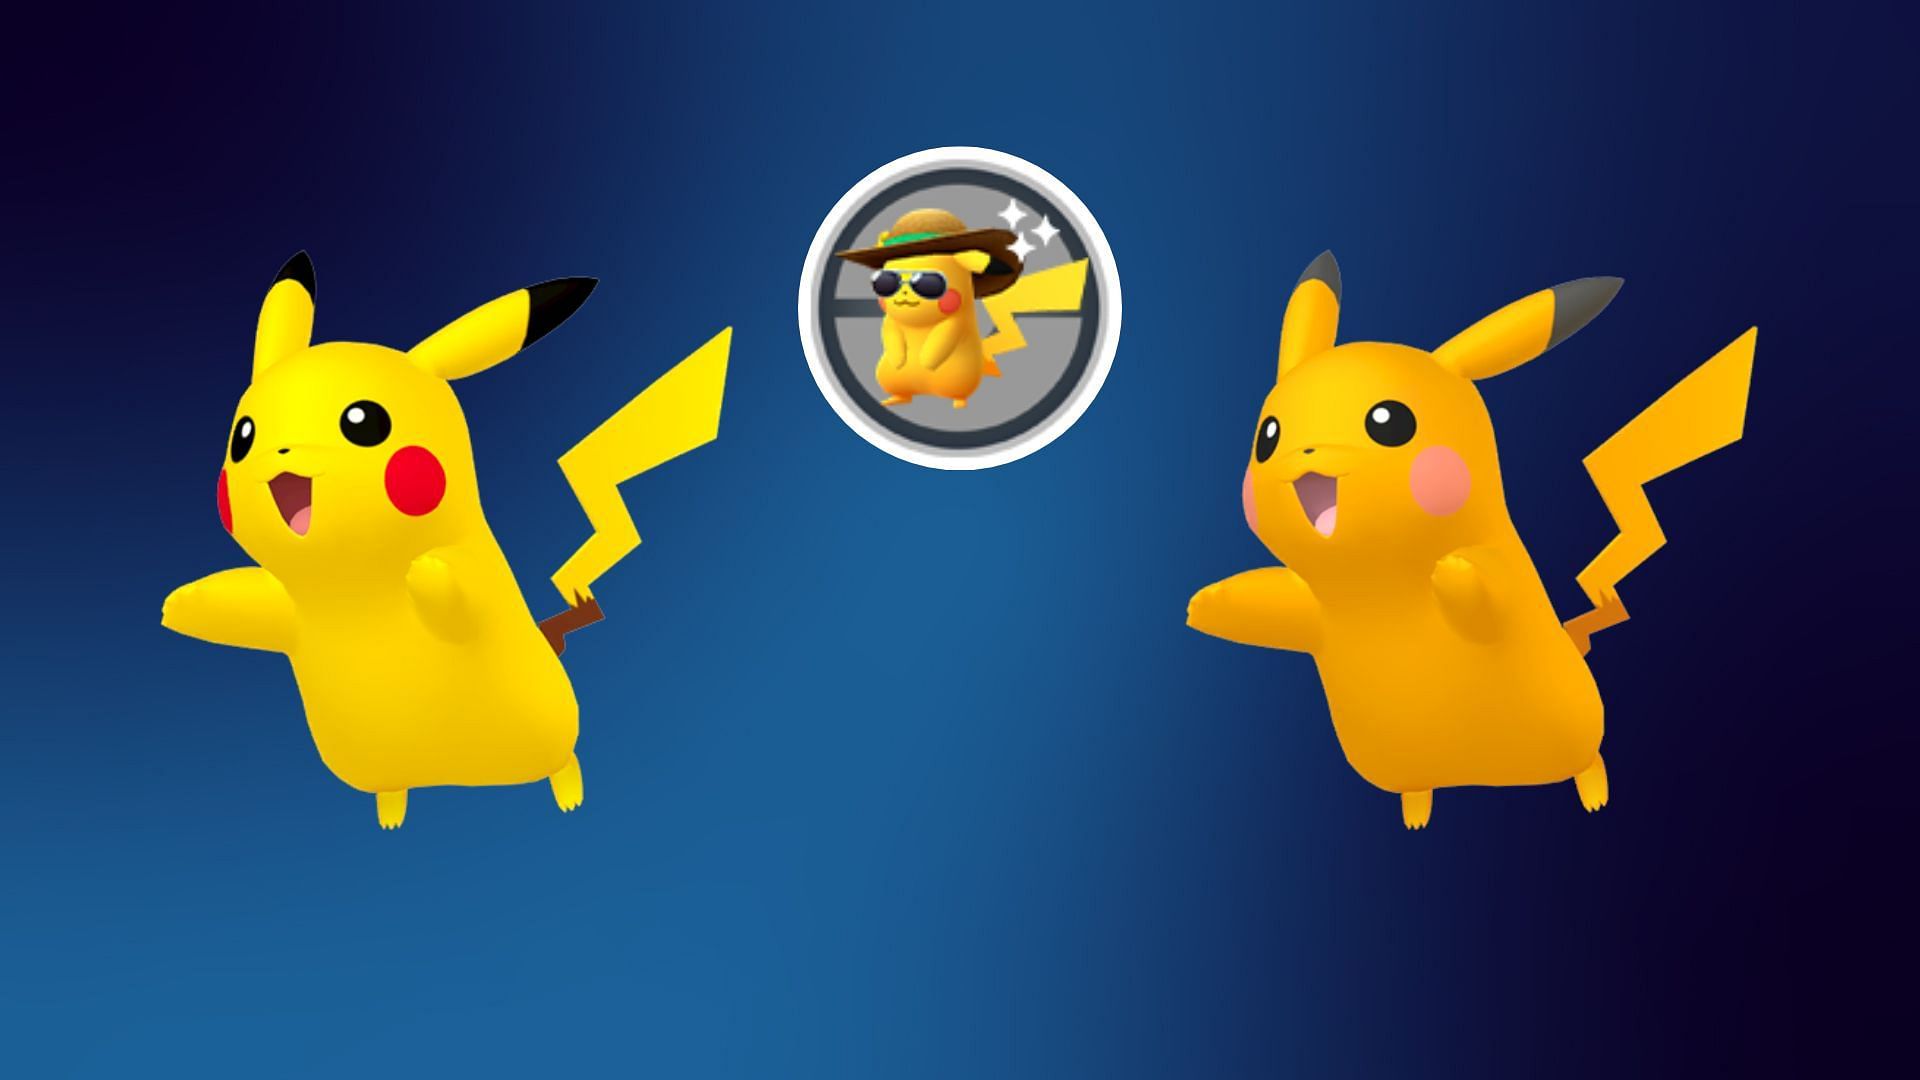 Pokémon of the Week - Pikachu